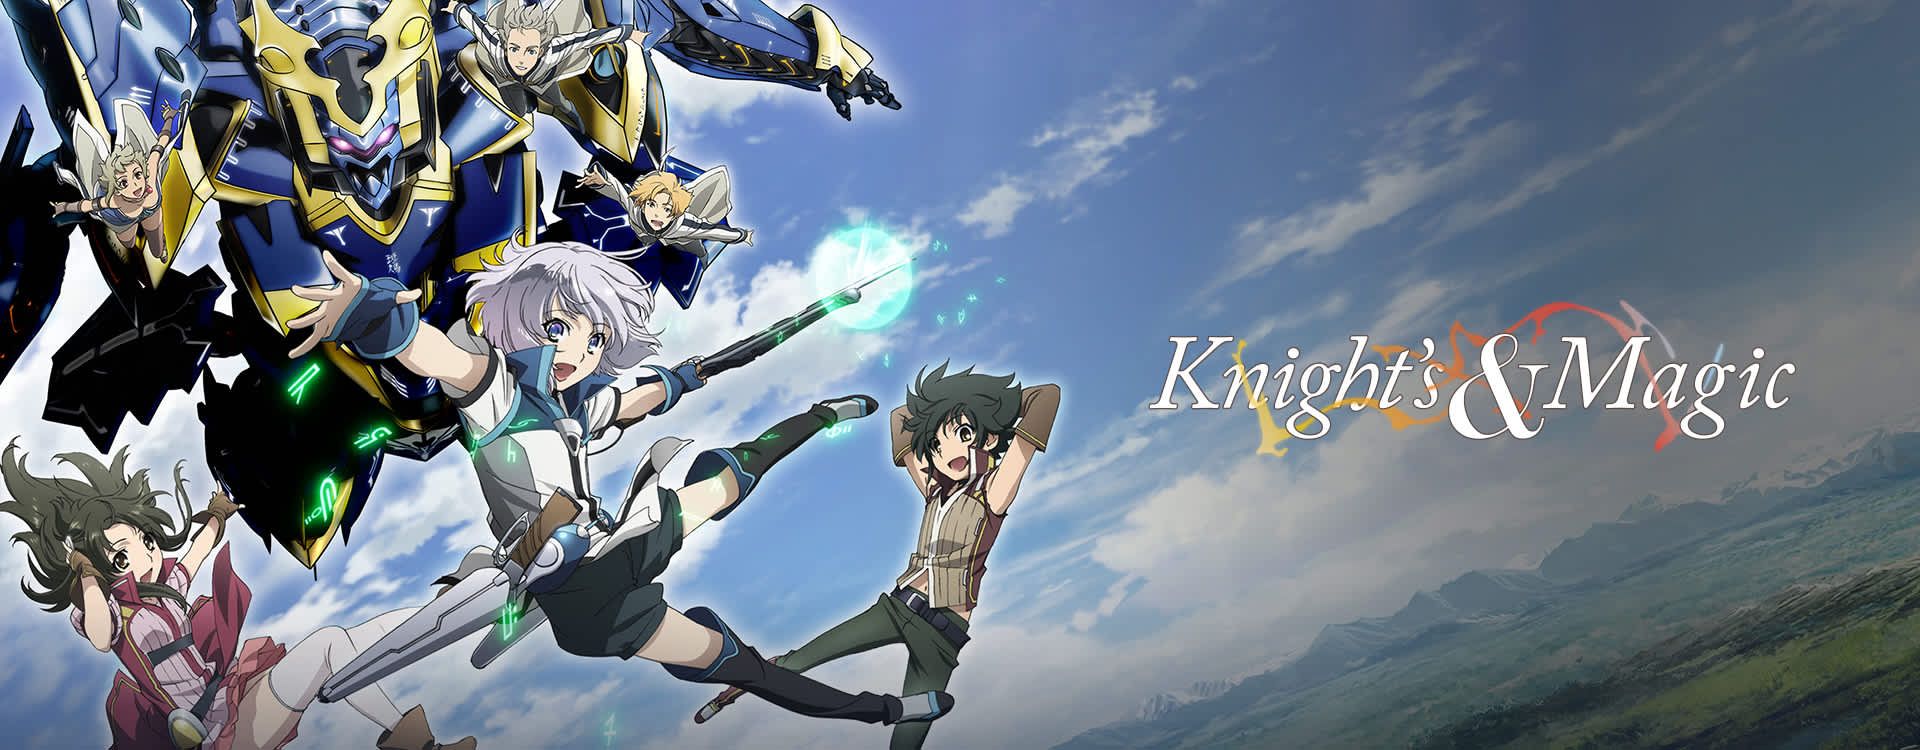 Knights And Magic Wallpaper - Knights And Magic Wallpaper Hd - HD Wallpaper 